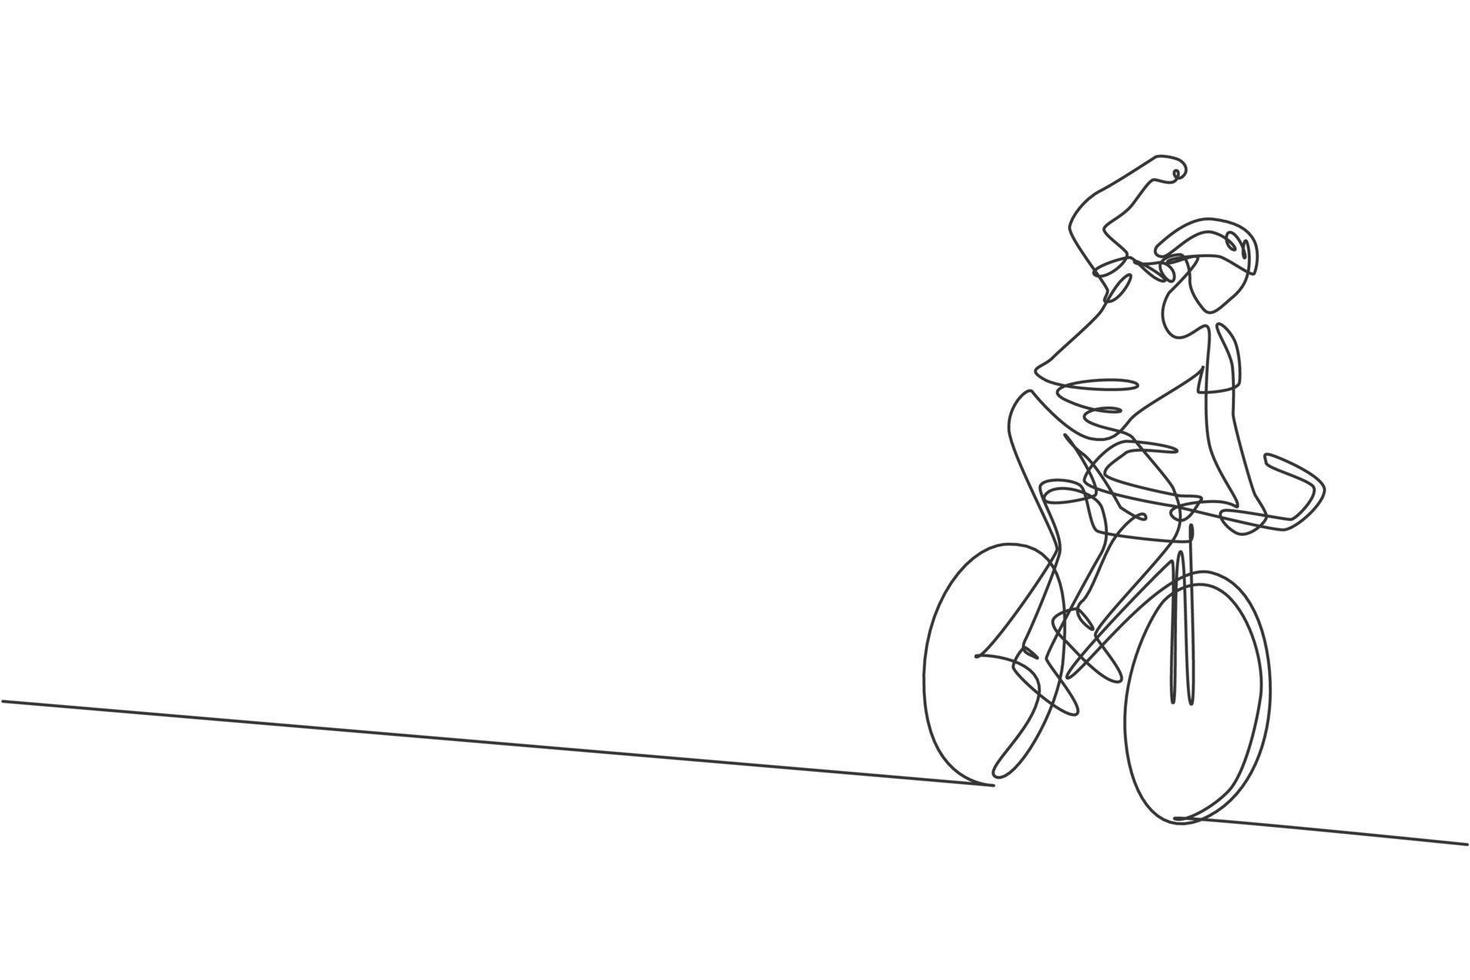 enda kontinuerlig linjeteckning av ung smidig man cyklist glad att nå mållinjen. sport livsstilskoncept. trendiga en rad rita design grafisk vektorillustration för cykling race marknadsföring media vektor